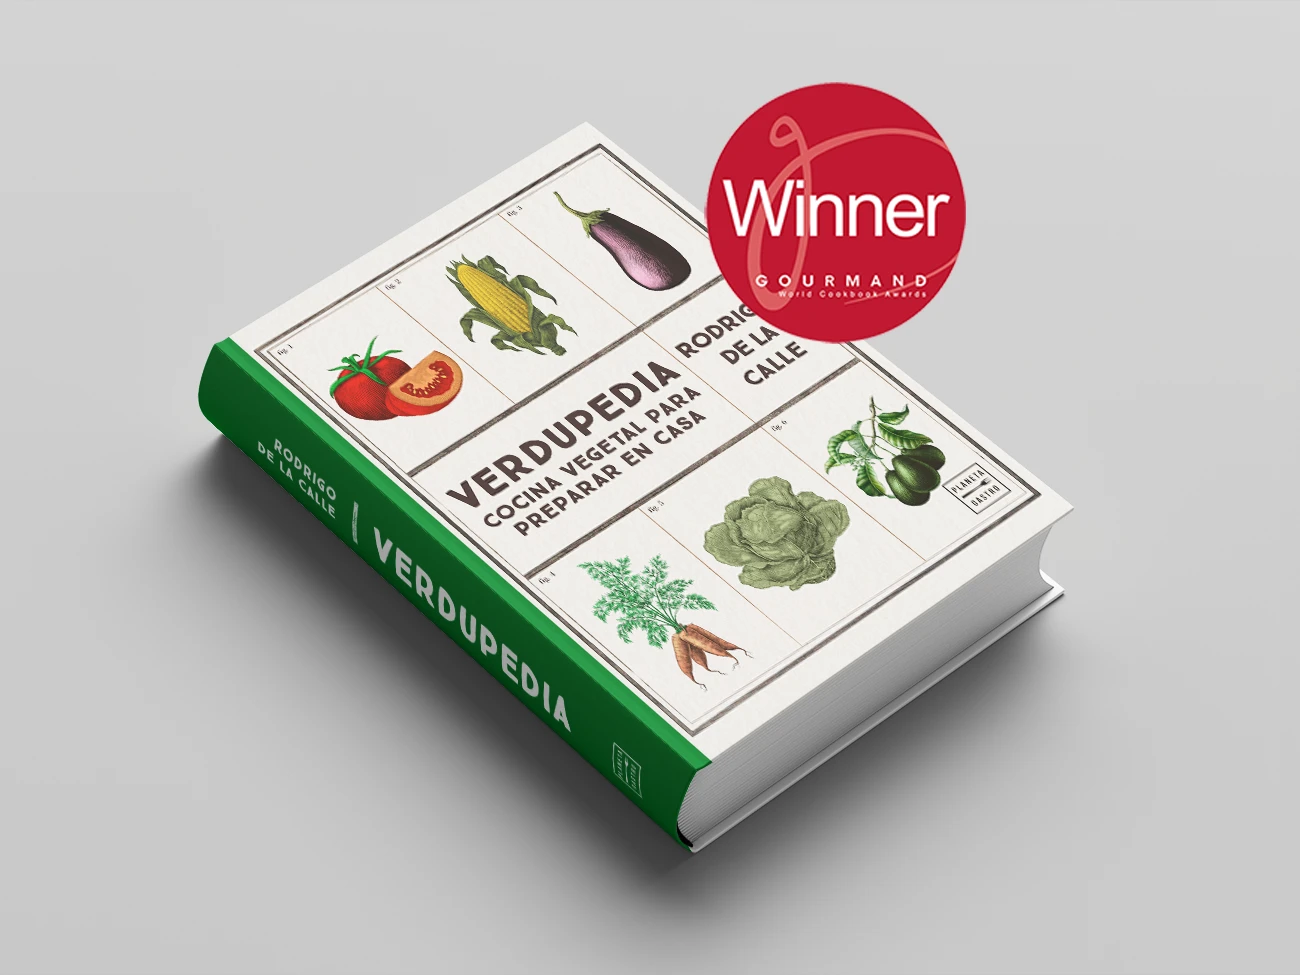 Diseño del libro de cocina de verduras Verdupedia